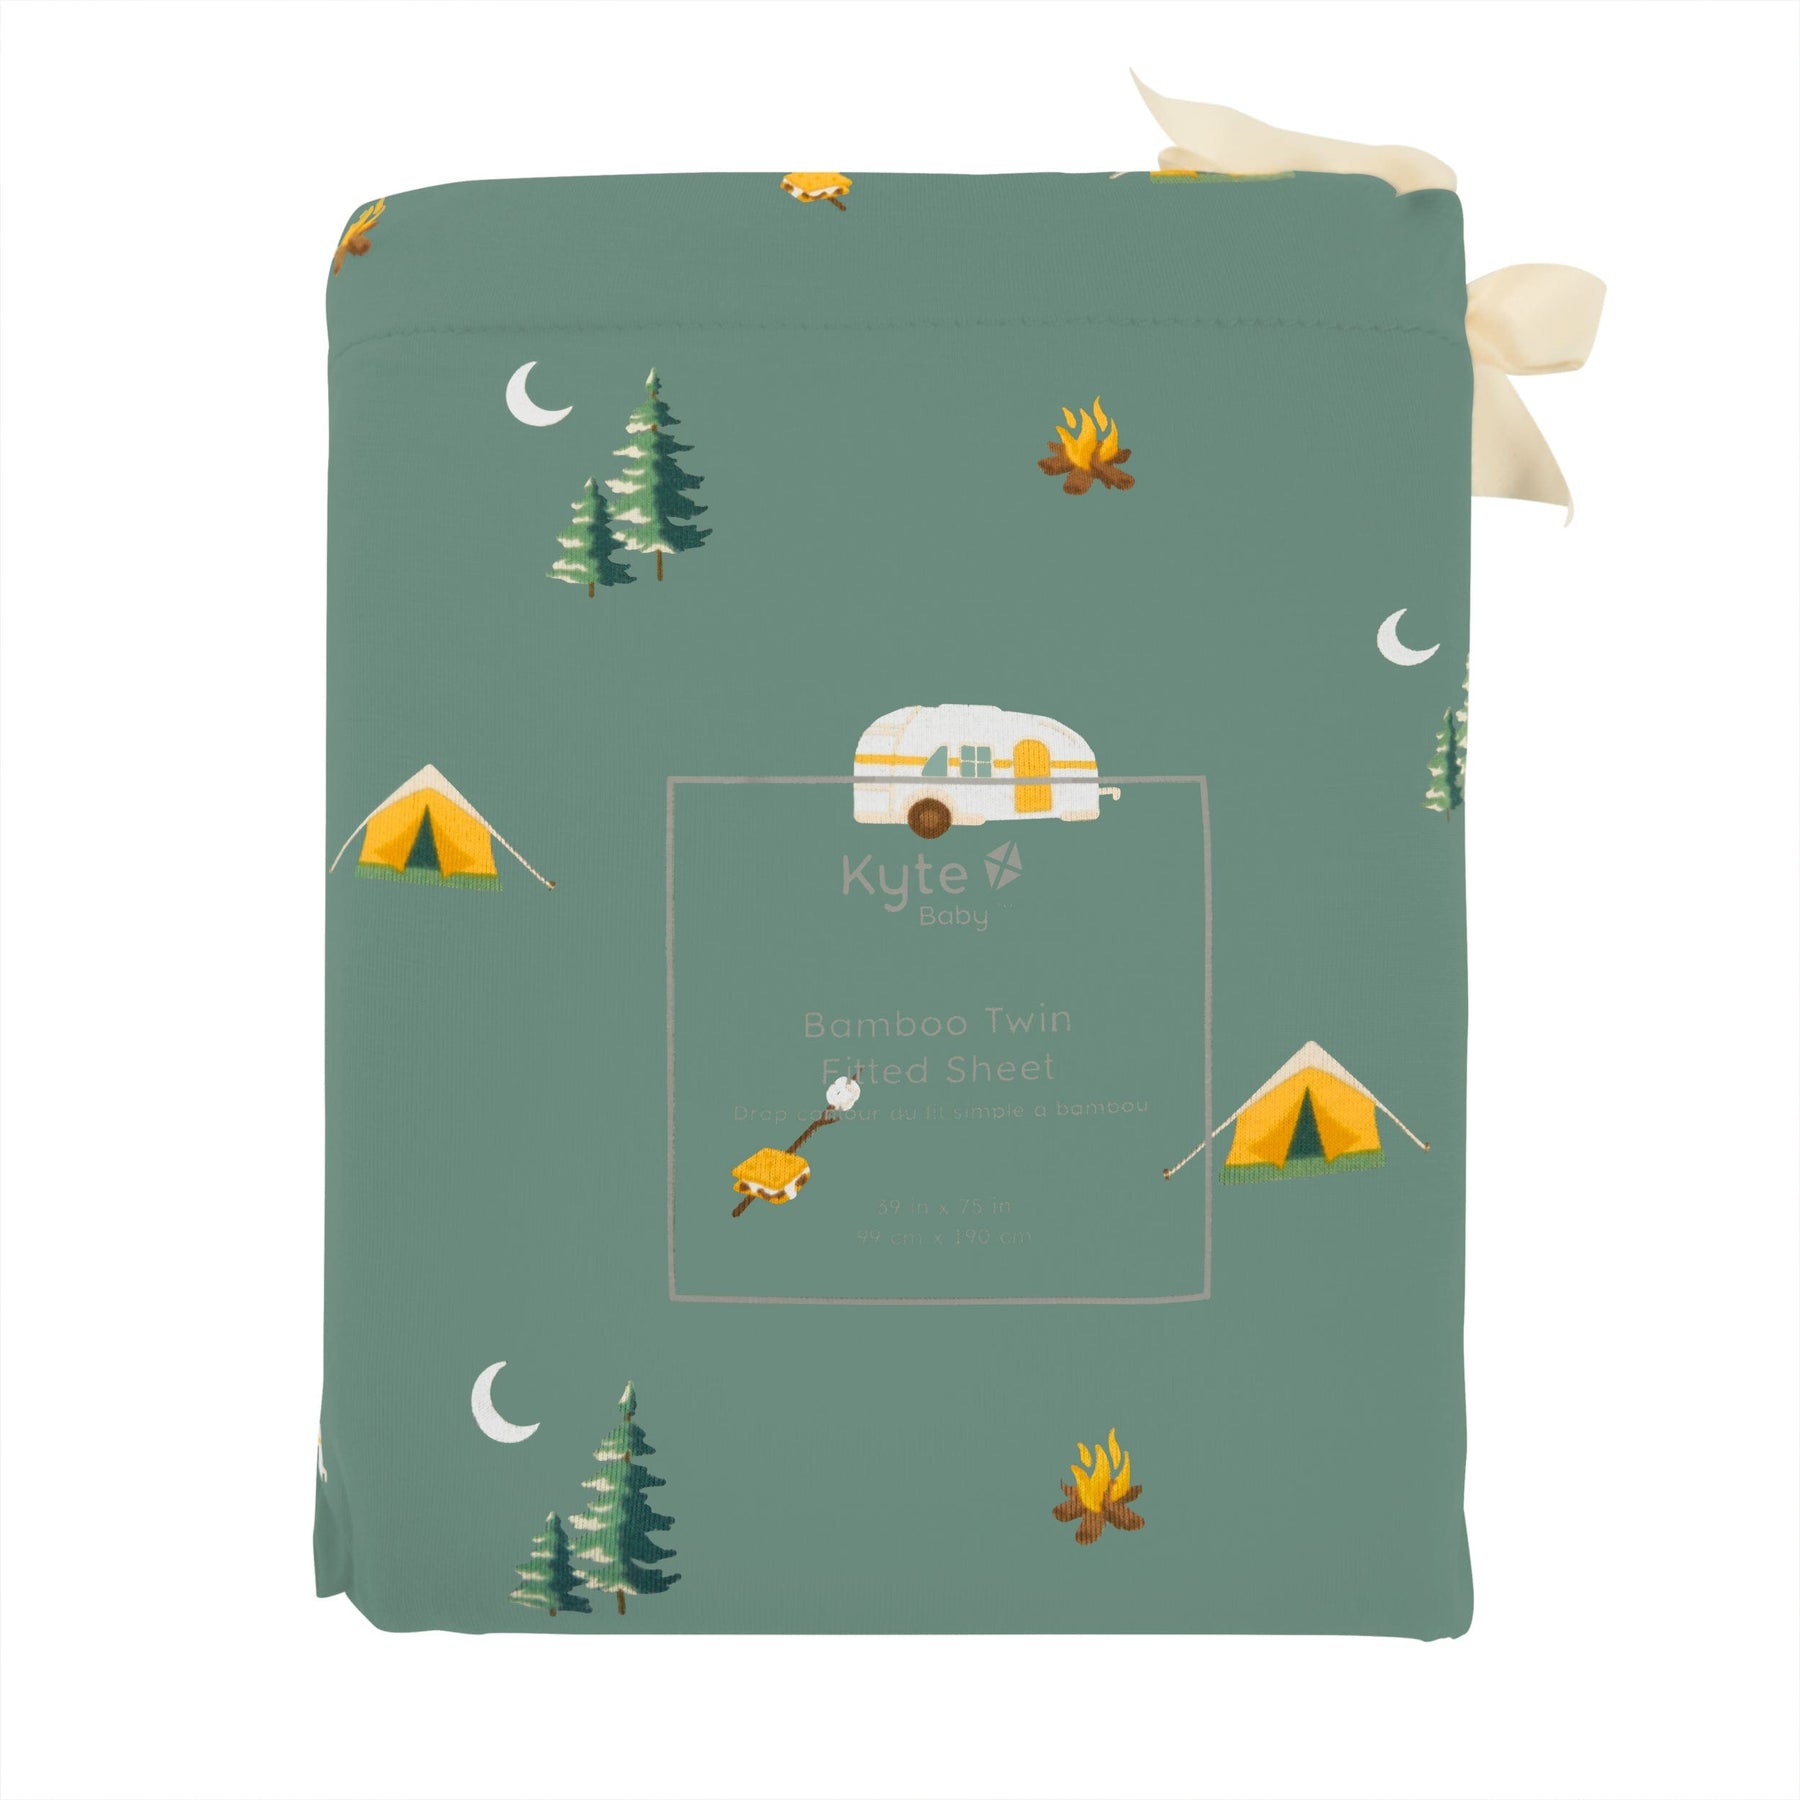 Kyte Baby Twin Sheets Camping / Twin Sheet Twin Sheet in Camping *Slight Misprint*